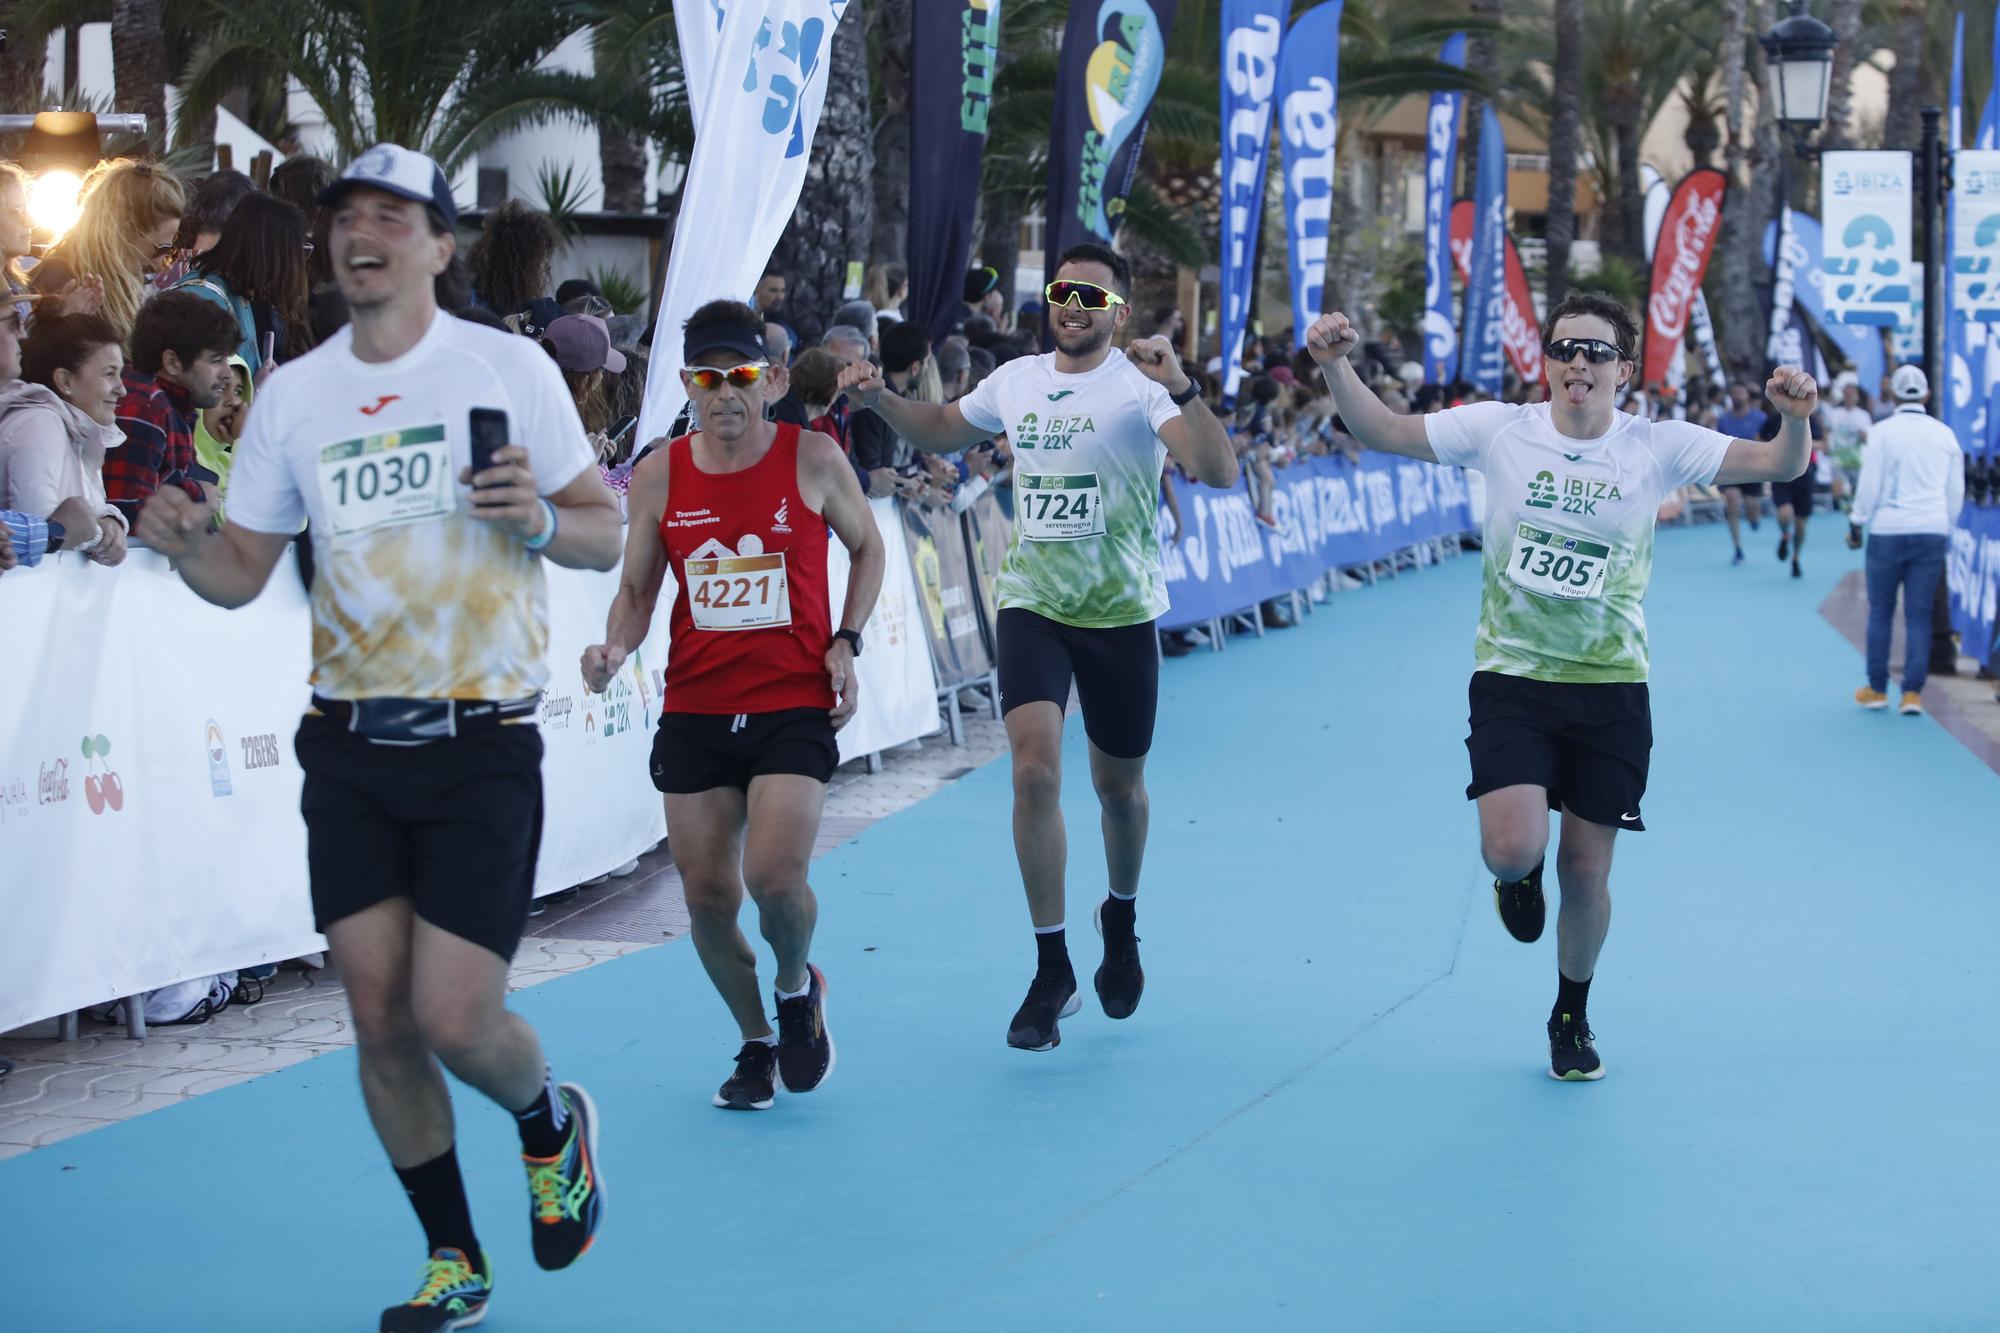 Búscate en nuestra galería de fotos del Santa Eulària Ibiza Marathon